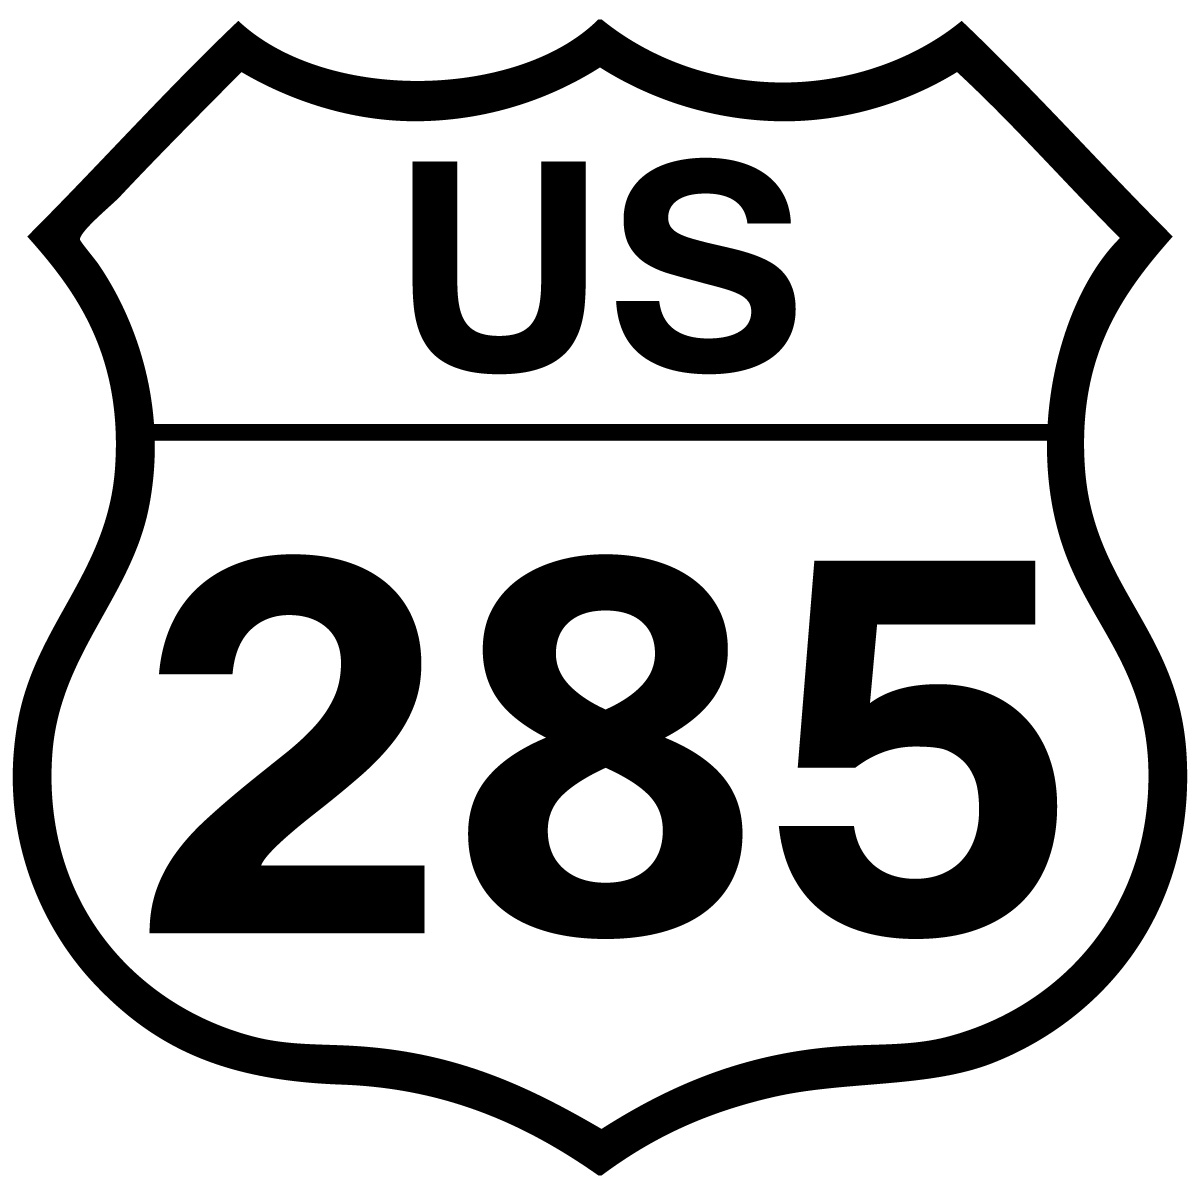 US 285